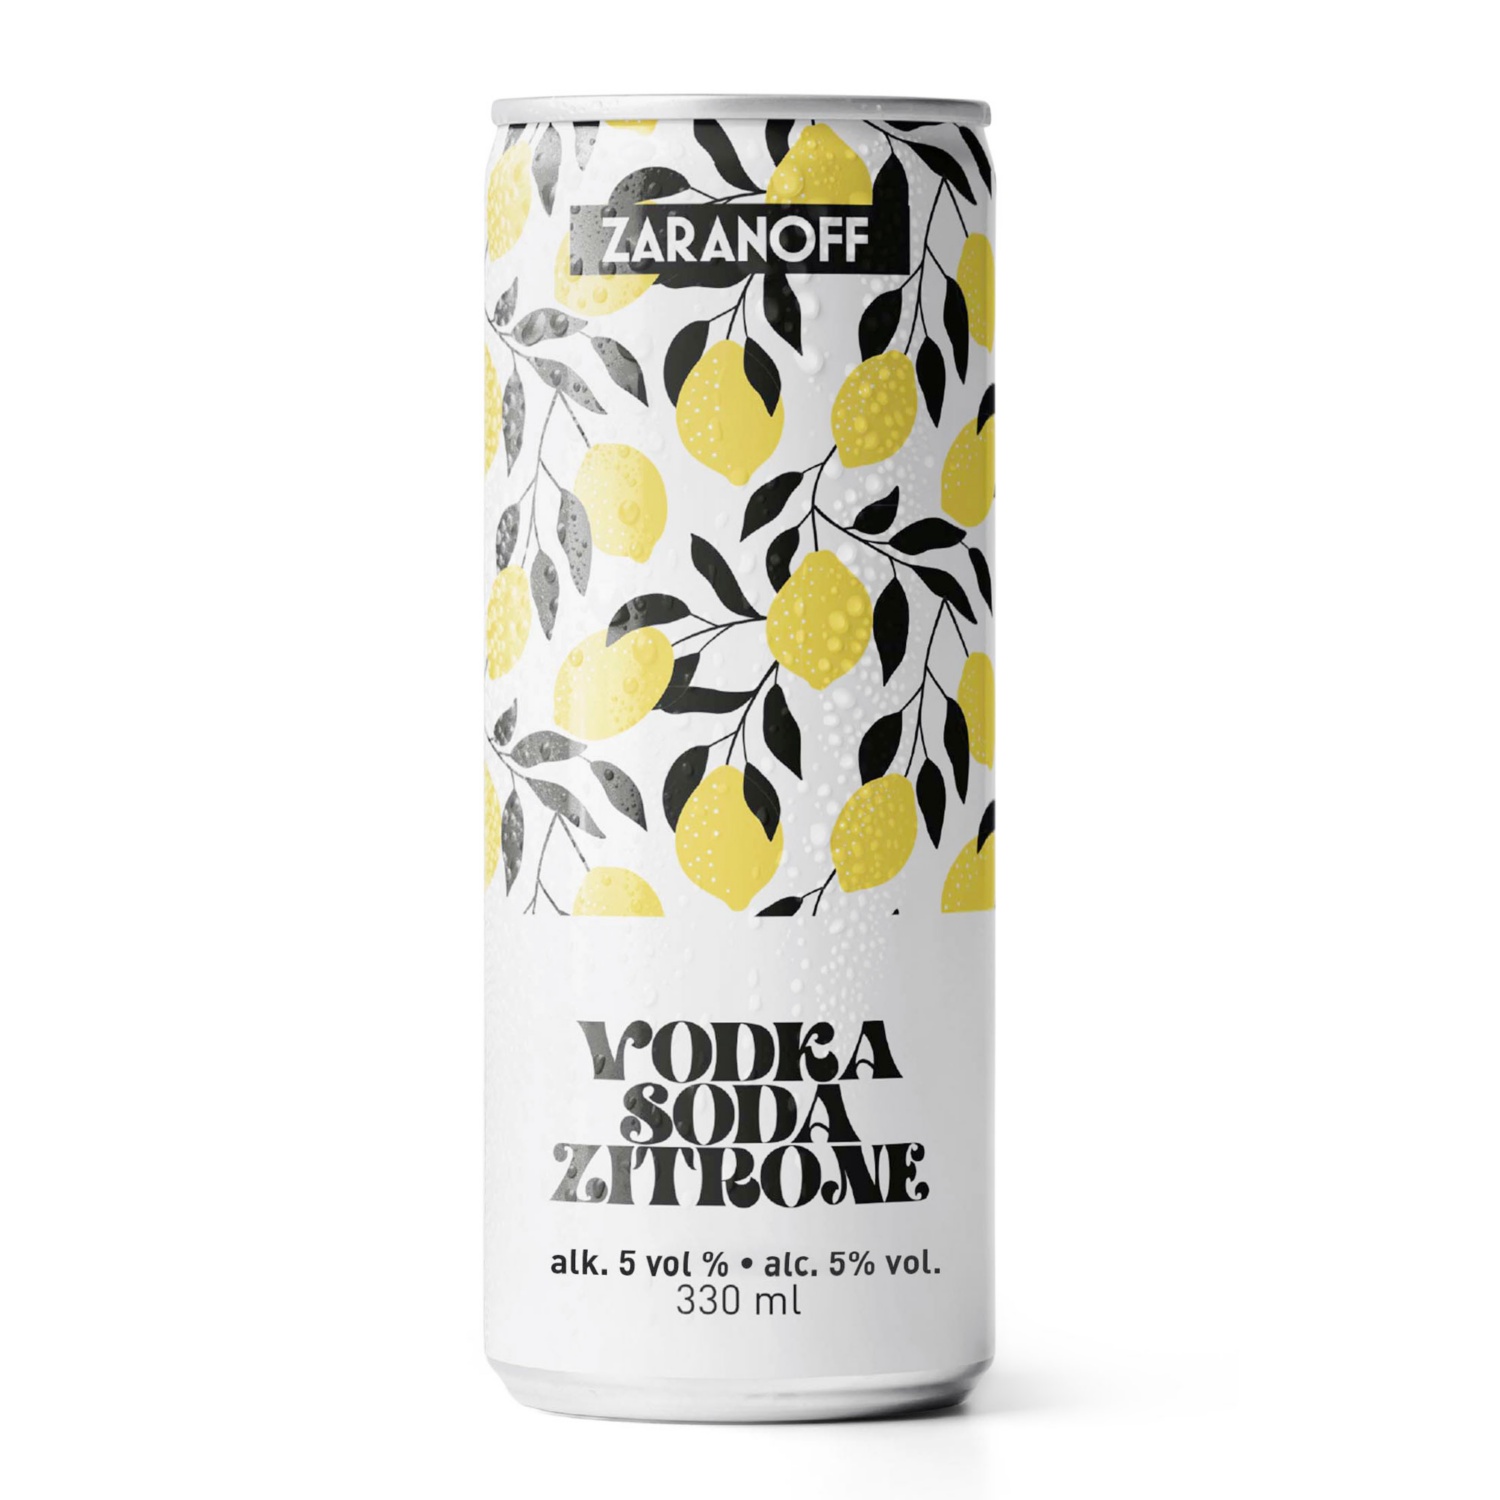 ZARANOFF Vodka soda limone